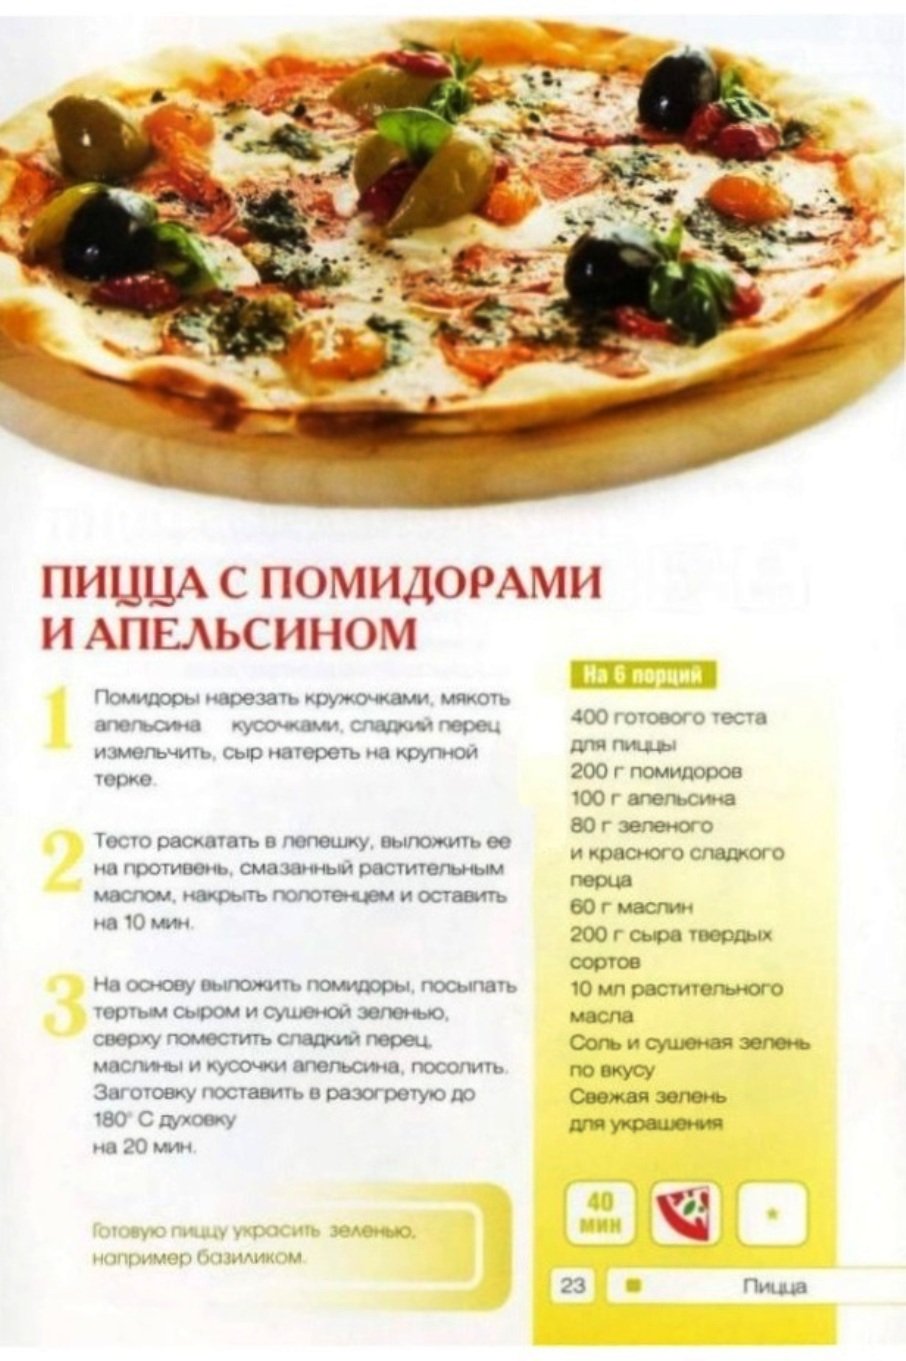 пицца рецепты в картинки фото 16